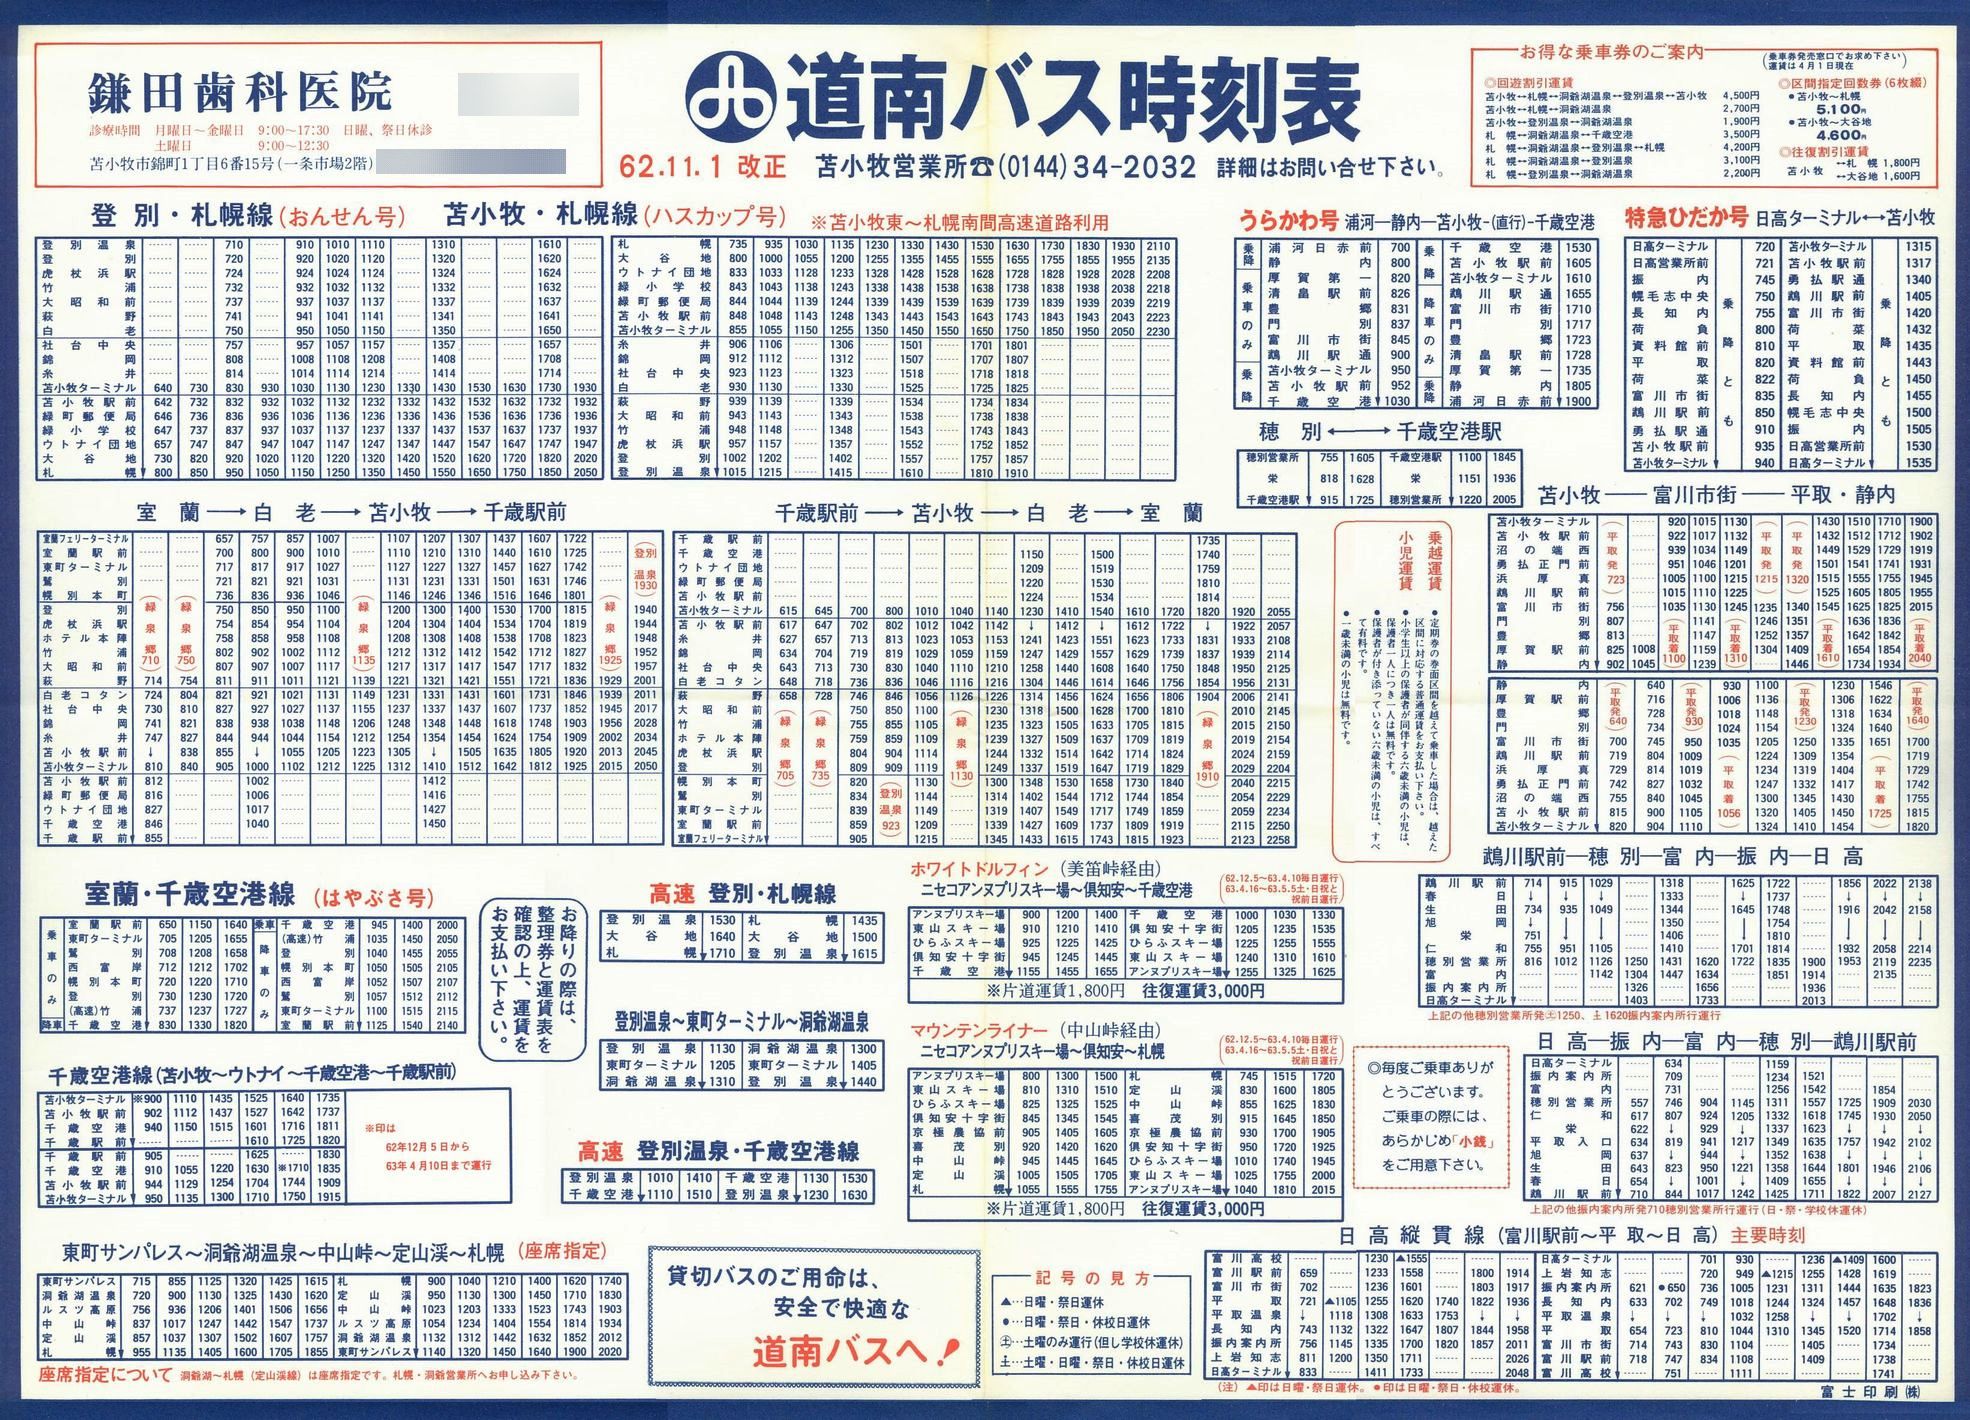 1987-11-01改正_道南バス_苫小牧管内大判時刻表